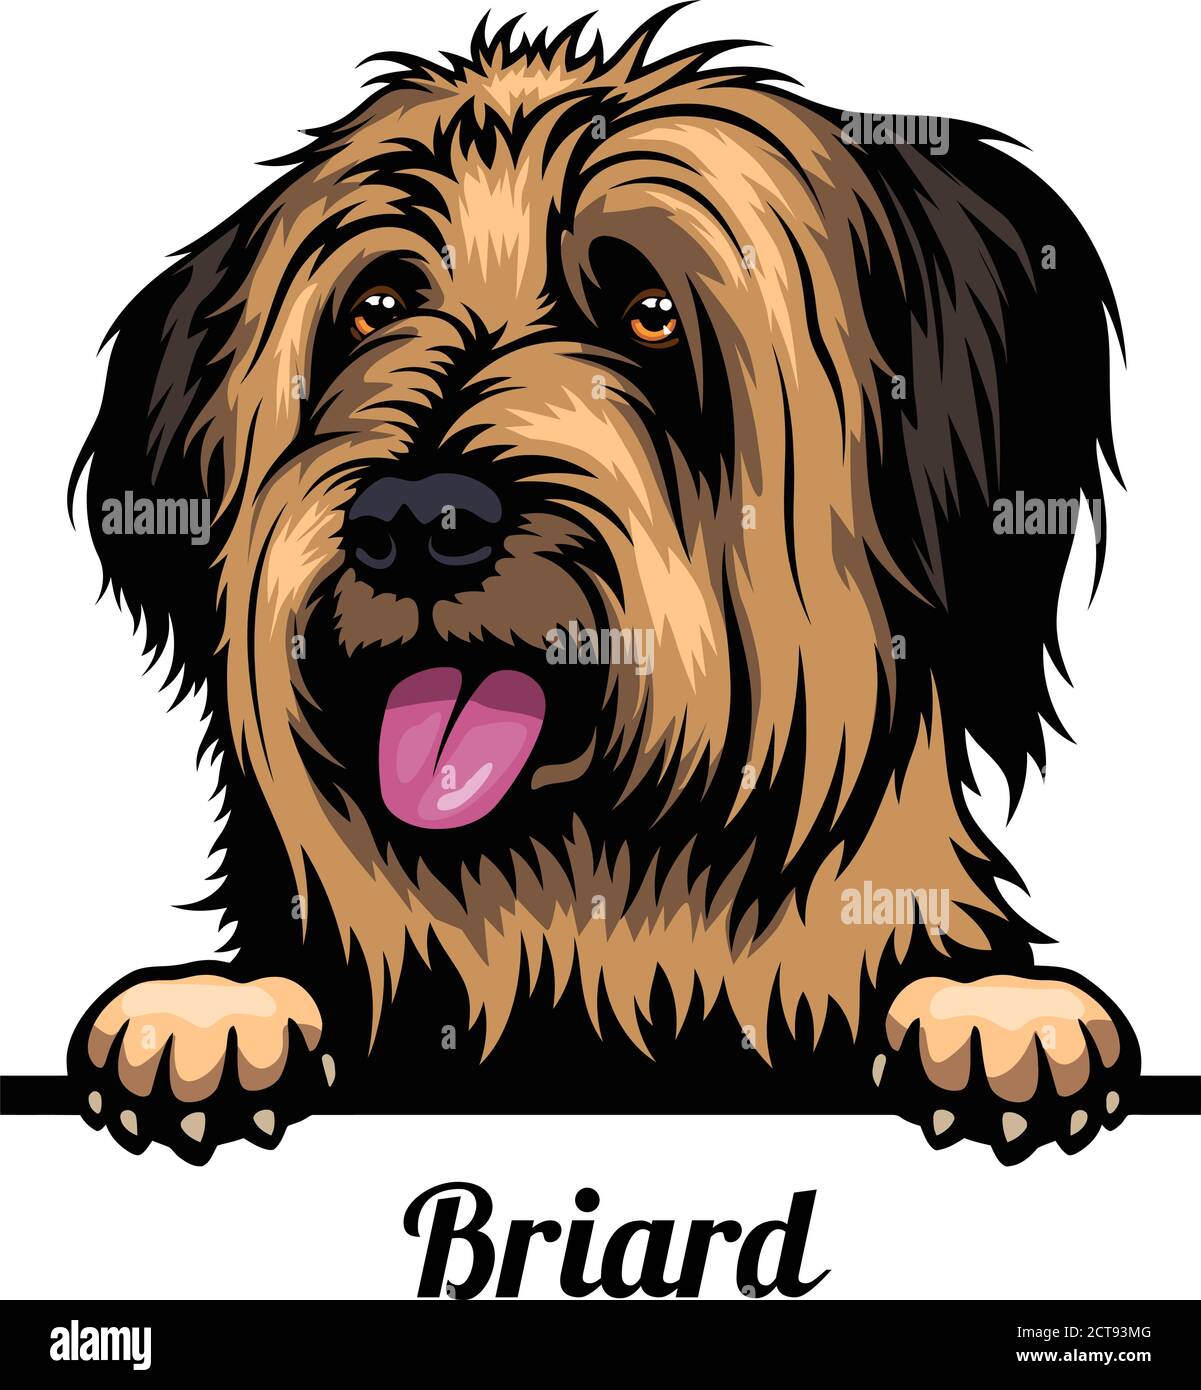 Capo Briard - razza del cane. Immagine a colori di una testa di cani isolata su uno sfondo bianco Illustrazione Vettoriale